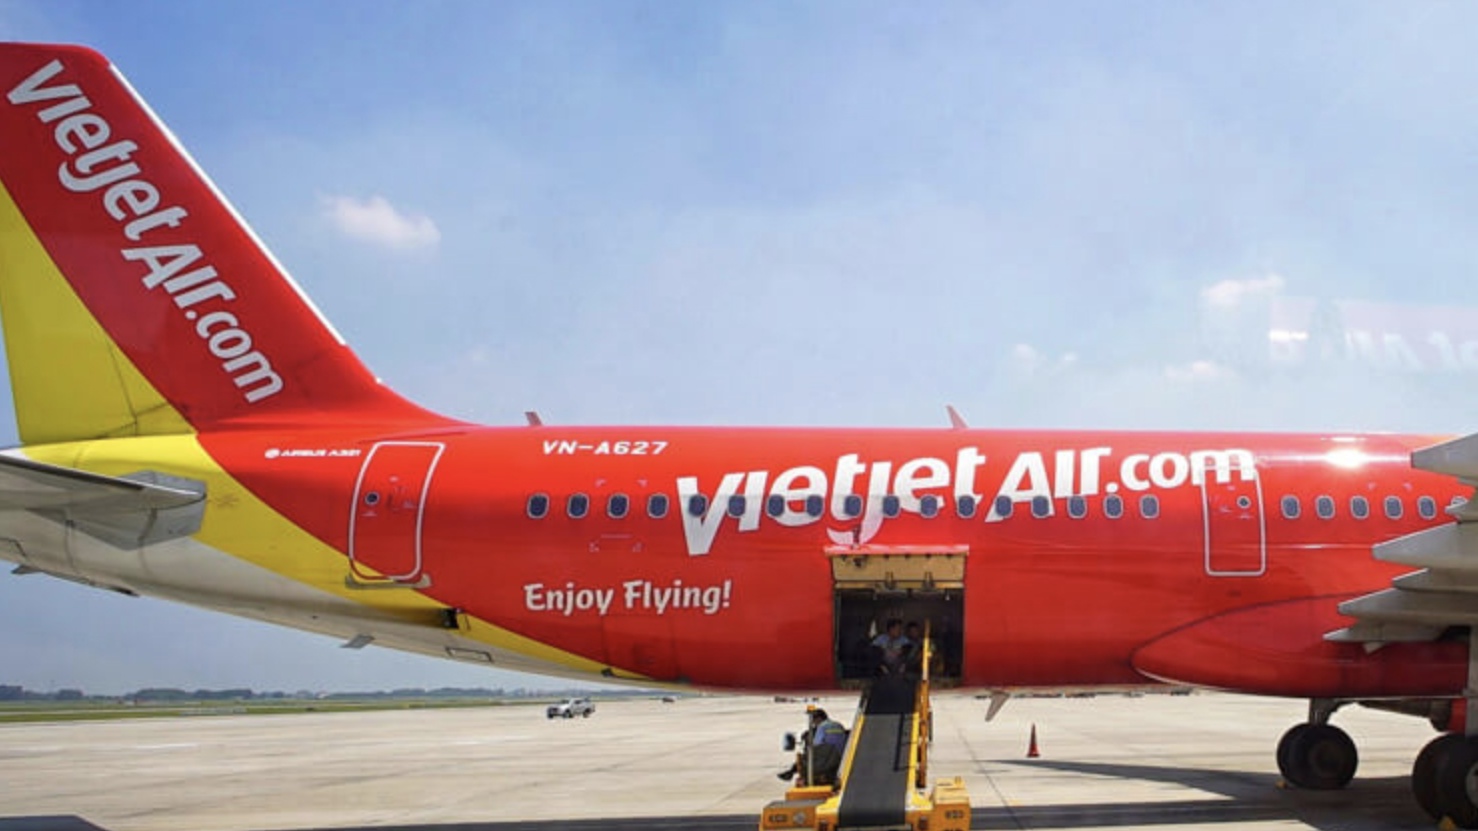 Hàng không Vietjet huy động 300 tỷ đồng từ trái phiếu